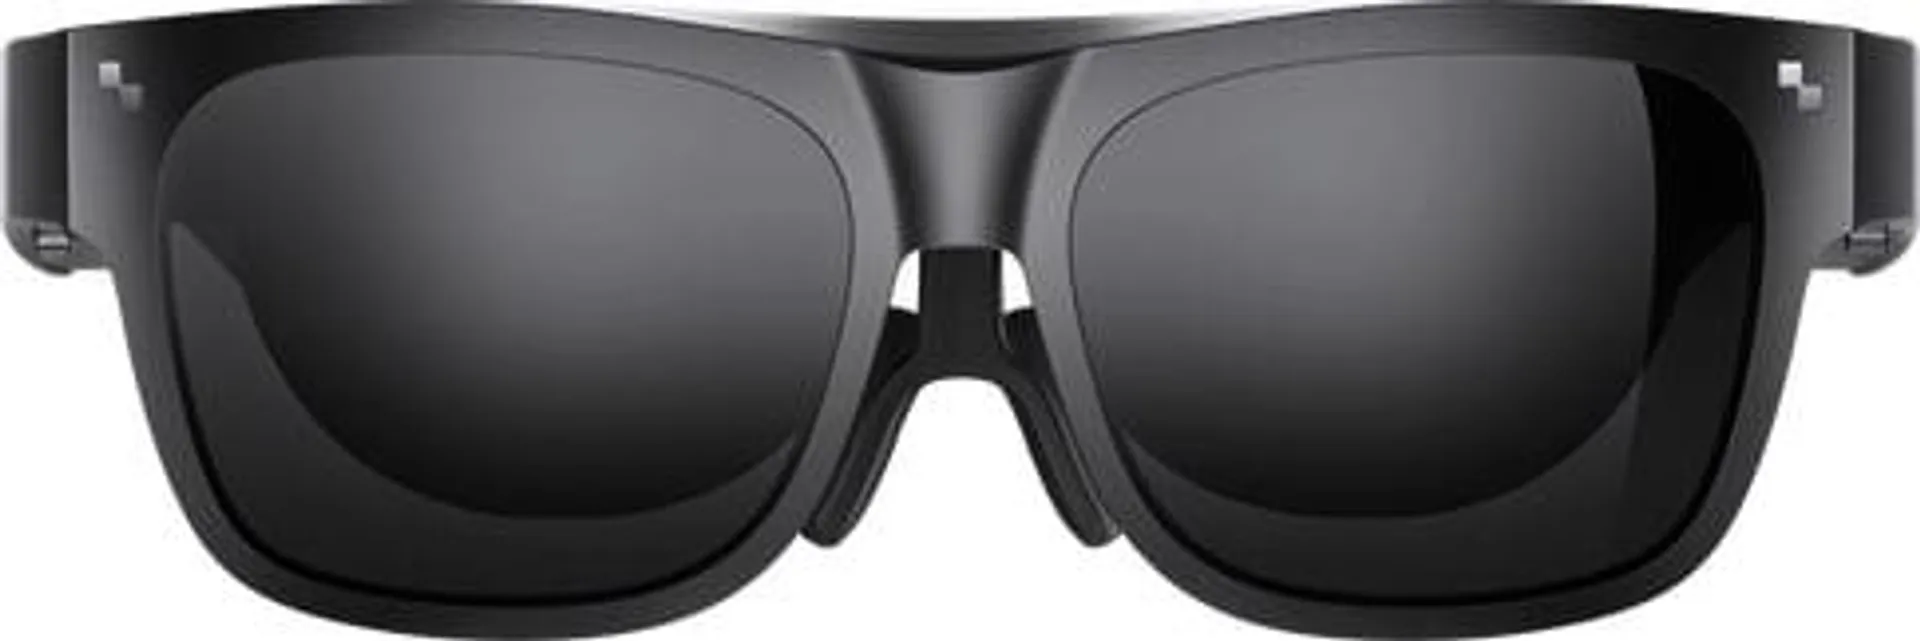 NXTWEAR S Smart Glasses